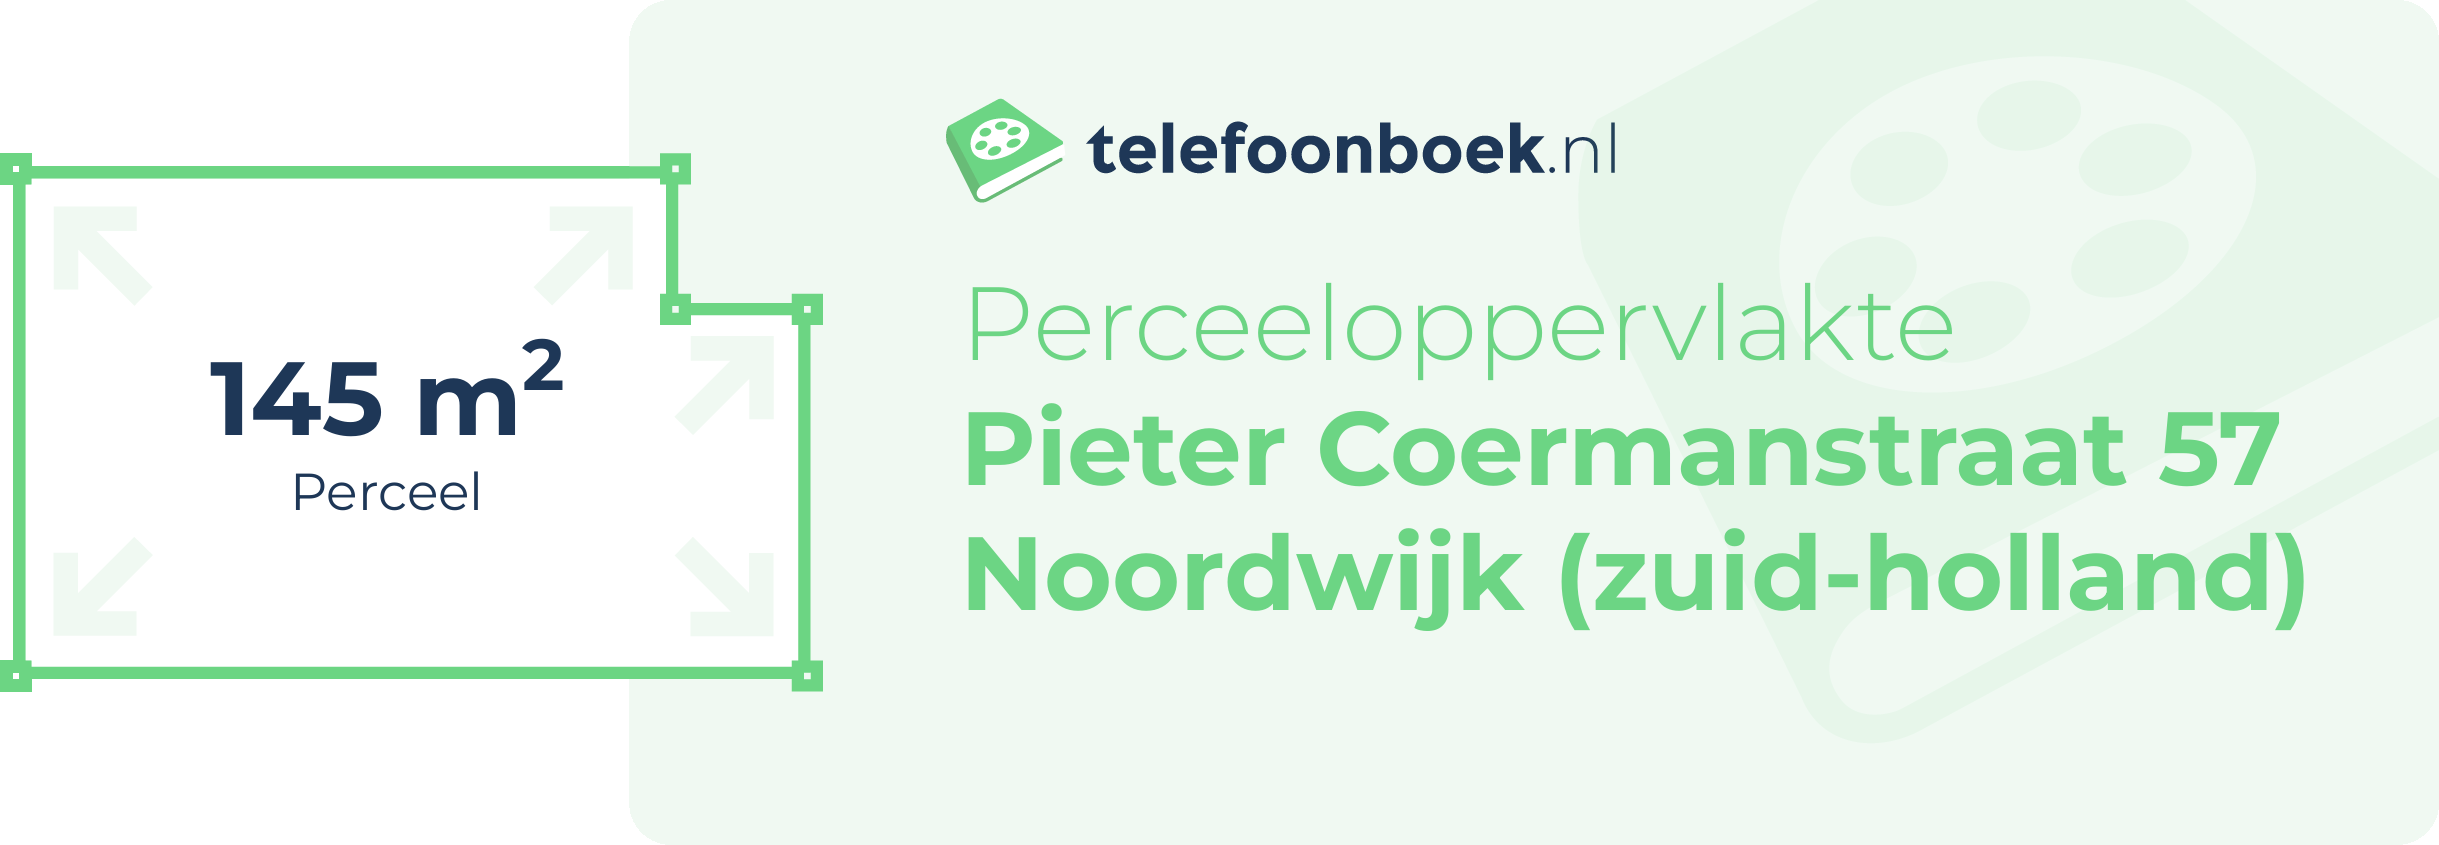 Perceeloppervlakte Pieter Coermanstraat 57 Noordwijk (Zuid-Holland)